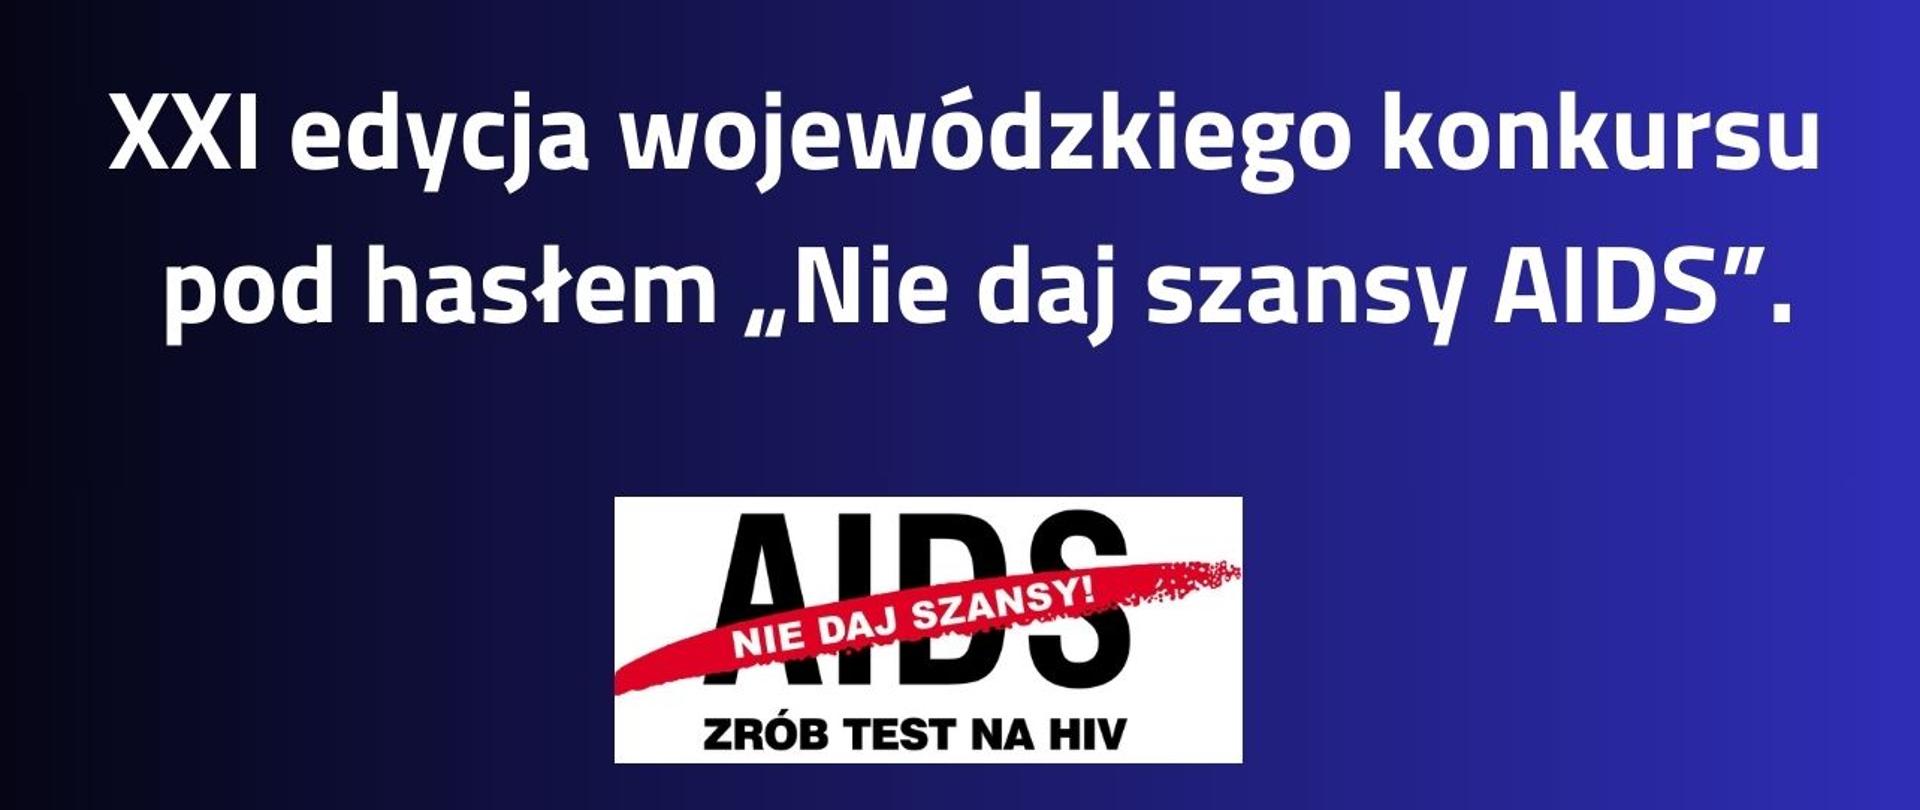 XXI edycja wojewódzkiego konkursu pod hasłem "Nie daj szansy AIDS"